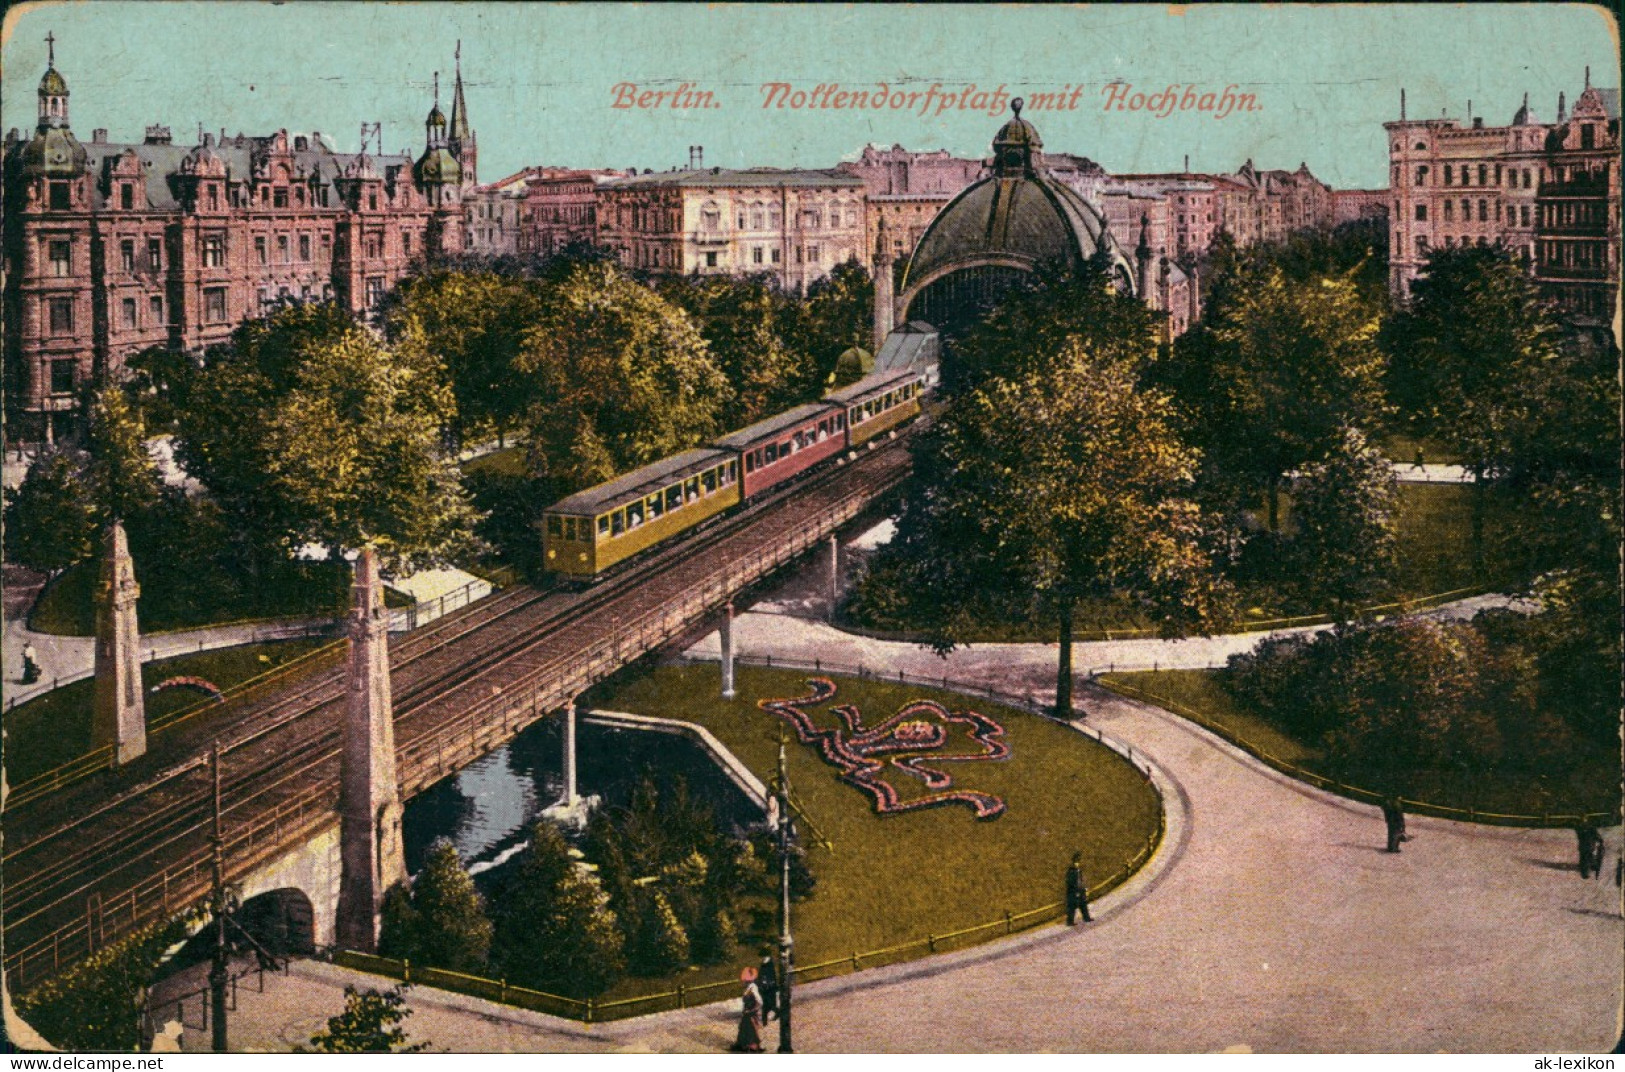 Ansichtskarte Schöneberg-Berlin Nollendorfplatz Hochbahn 1916 - Schöneberg